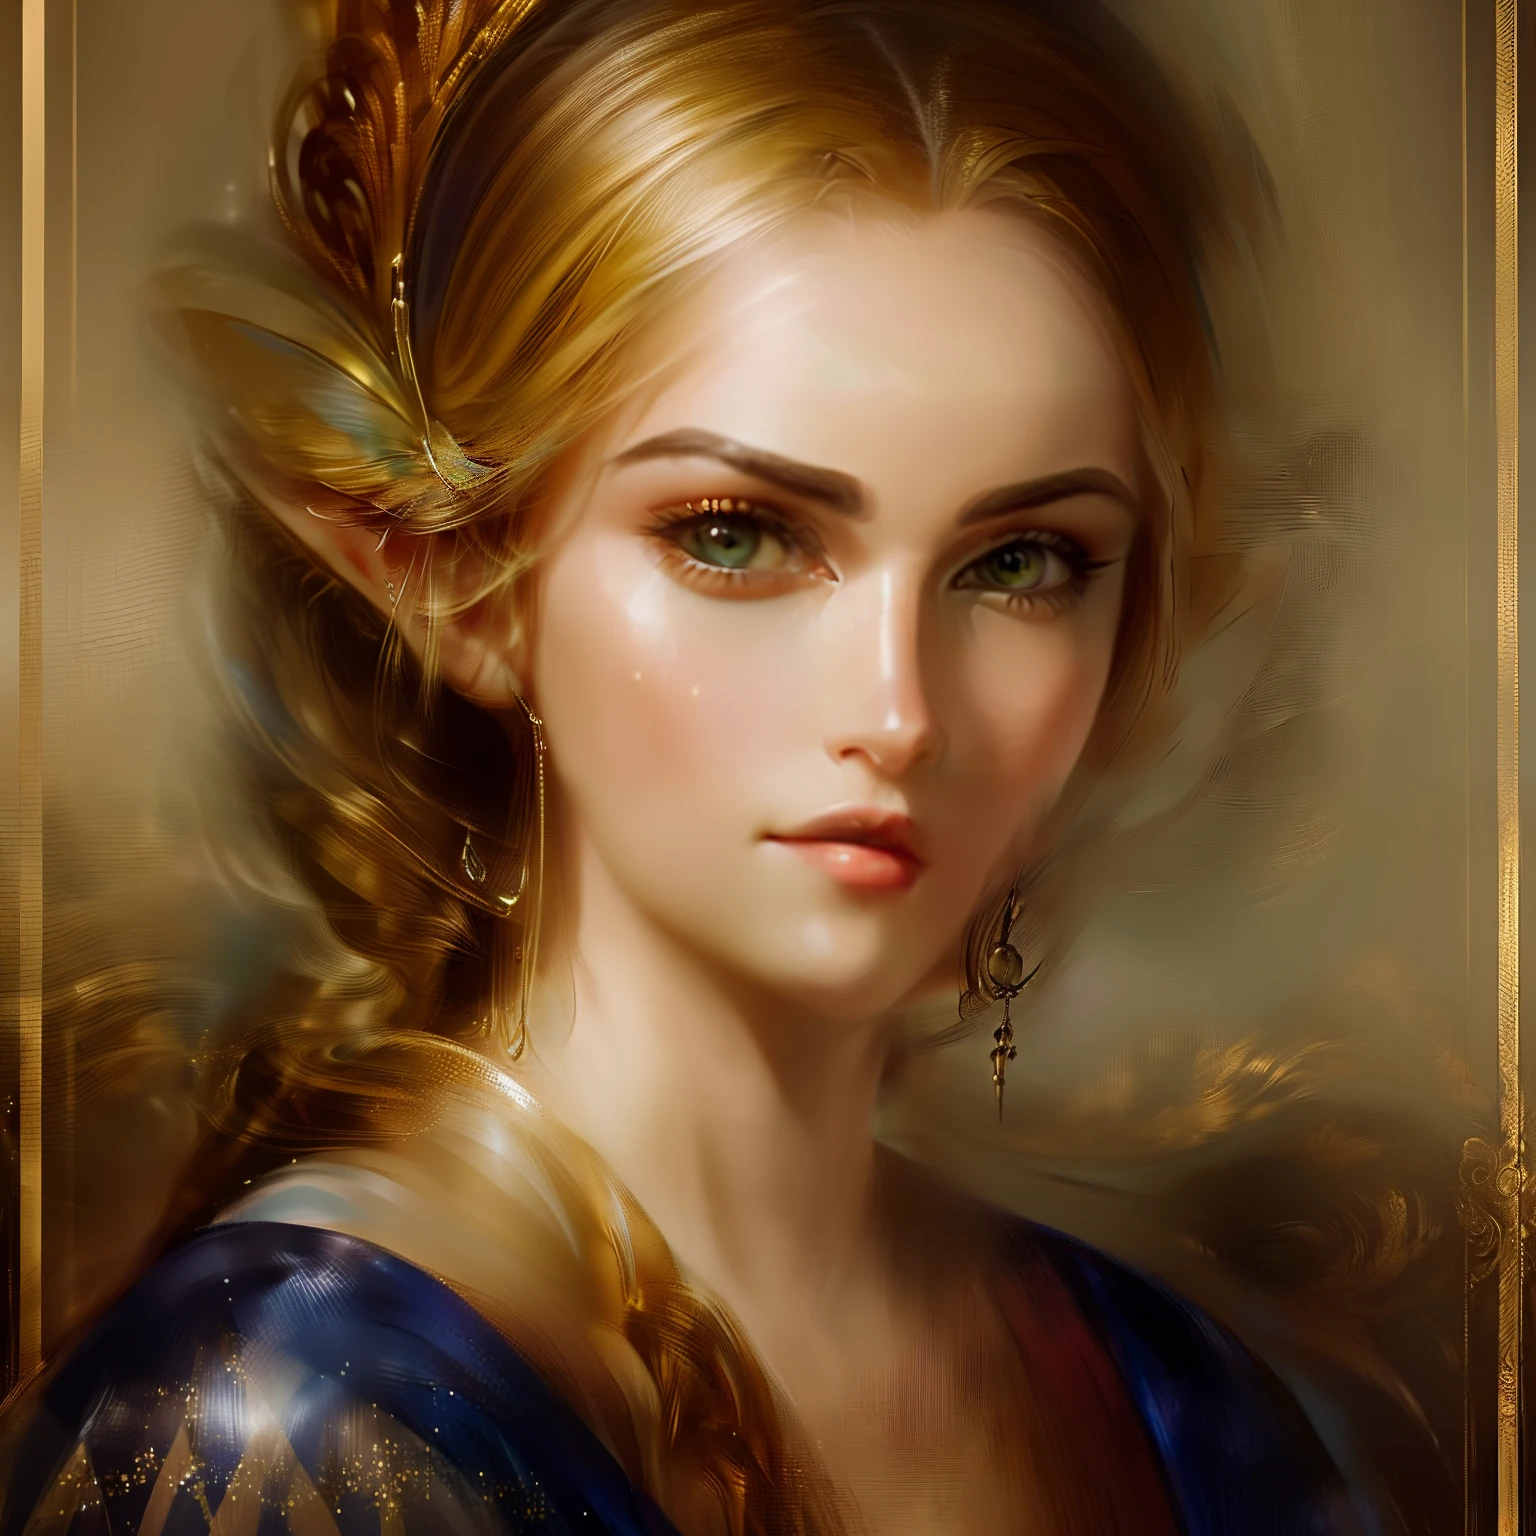 (parte maestra, Alta resolución:1.3), pelo blanco,(Retrato de estudio de una princesa elfa celta, mujer celestial con pelo rojo de perfil:1.2), (sus profundos ojos azules irradian un poderoso brillo:1.1), (Cámara Nikon Z7II, perfecto para capturar detalles intrincados:1.2), (emparejado con el Nikon NIKKOR Z 85mm f/1.Lento 8 s:1.2), (La piel perfecta del duende exuda una sensación de belleza etérea.:1.1), (su largo cabello plateado cayendo en cascada con gracia:1.1), (Un suave, expresión suave adornando su rostro:1.1), (El foco en el encantador perfil de la mujer elfa.:1.1), (el fondo del estudio un negro cautivador, enfatizando tu presencia:1.1), (El elfo adornado con delicadas y elegantes joyas.:1.1), (un traje de lana negro abrazando su cuello:1.1), (el retrato que captura su misterioso encanto y elegancia:1.1), (Un momento de gracia y belleza tranquila.:1.1), (sus ojos únicos y cautivadores atraen a los espectadores a las profundidades de su alma:1.1), (Un retrato atemporal de un ser mítico en un estudio.:1.1), (el sutil juego de luces y sombras que acentúa sus rasgos:1.1), (una perfecta armonía de mística y elegancia:1.1), (la mujer elfa que encarna una belleza eterna:1.1), (una imagen que transporta a los espectadores a un reino de fantasía y asombro:1.1), (la impecable iluminación del estudio resaltando cada detalle del mismo:1.1), (una representación cautivadora y serena de una criatura etérea:1.1), (un momento capturado en el tiempo, Donde la fantasía se encuentra con la realidad:1.1), (El entorno del estudio añade una sensación de atemporalidad al retrato.:1.1), (un retrato de una mujer elfa que cautiva con su encantadora presencia:1.1), (la combinación de sus ojos brillantes y su expresión suave crean una atmósfera de otro mundo:1.1), (Un retrato de estudio que muestra la belleza y la fascinación de los seres míticos:1.1)